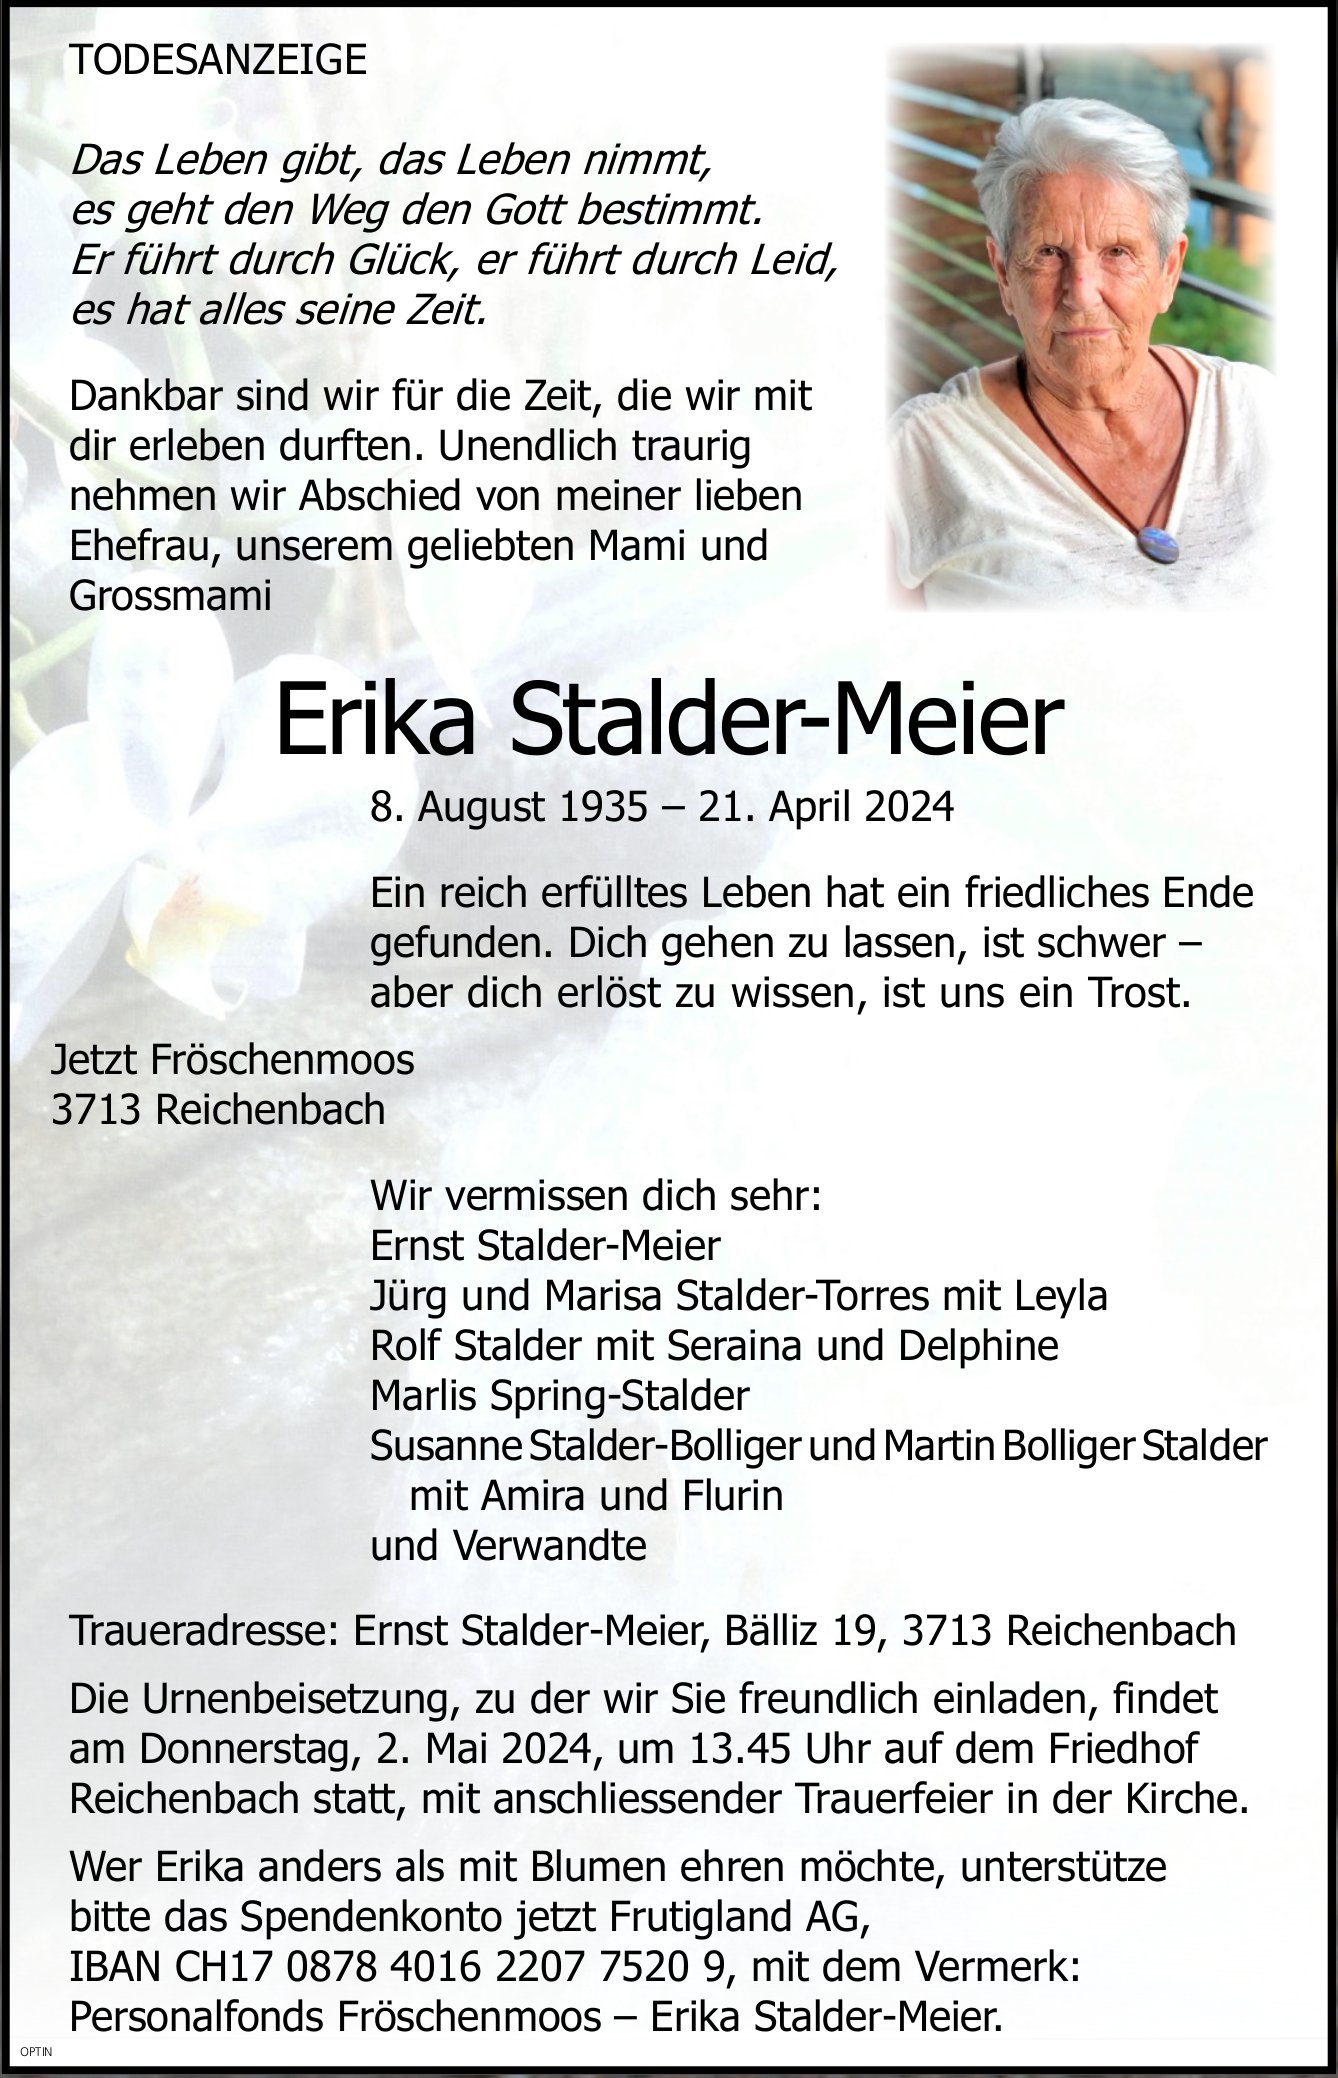 Erika Stalder-Meier, April 2024 / TA